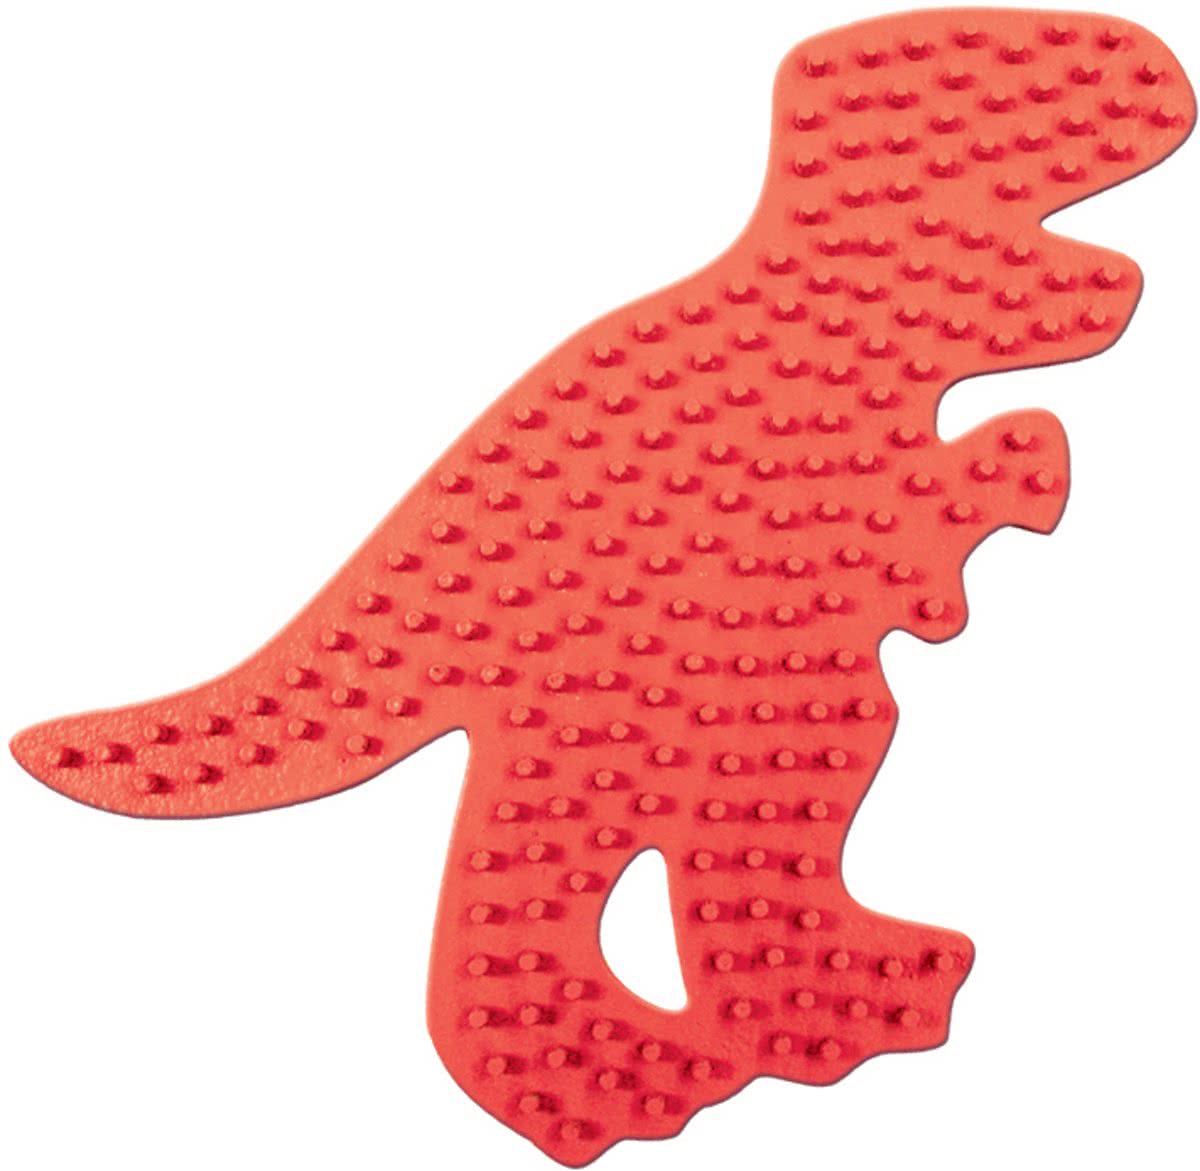   Strijkkralenbord T-rex